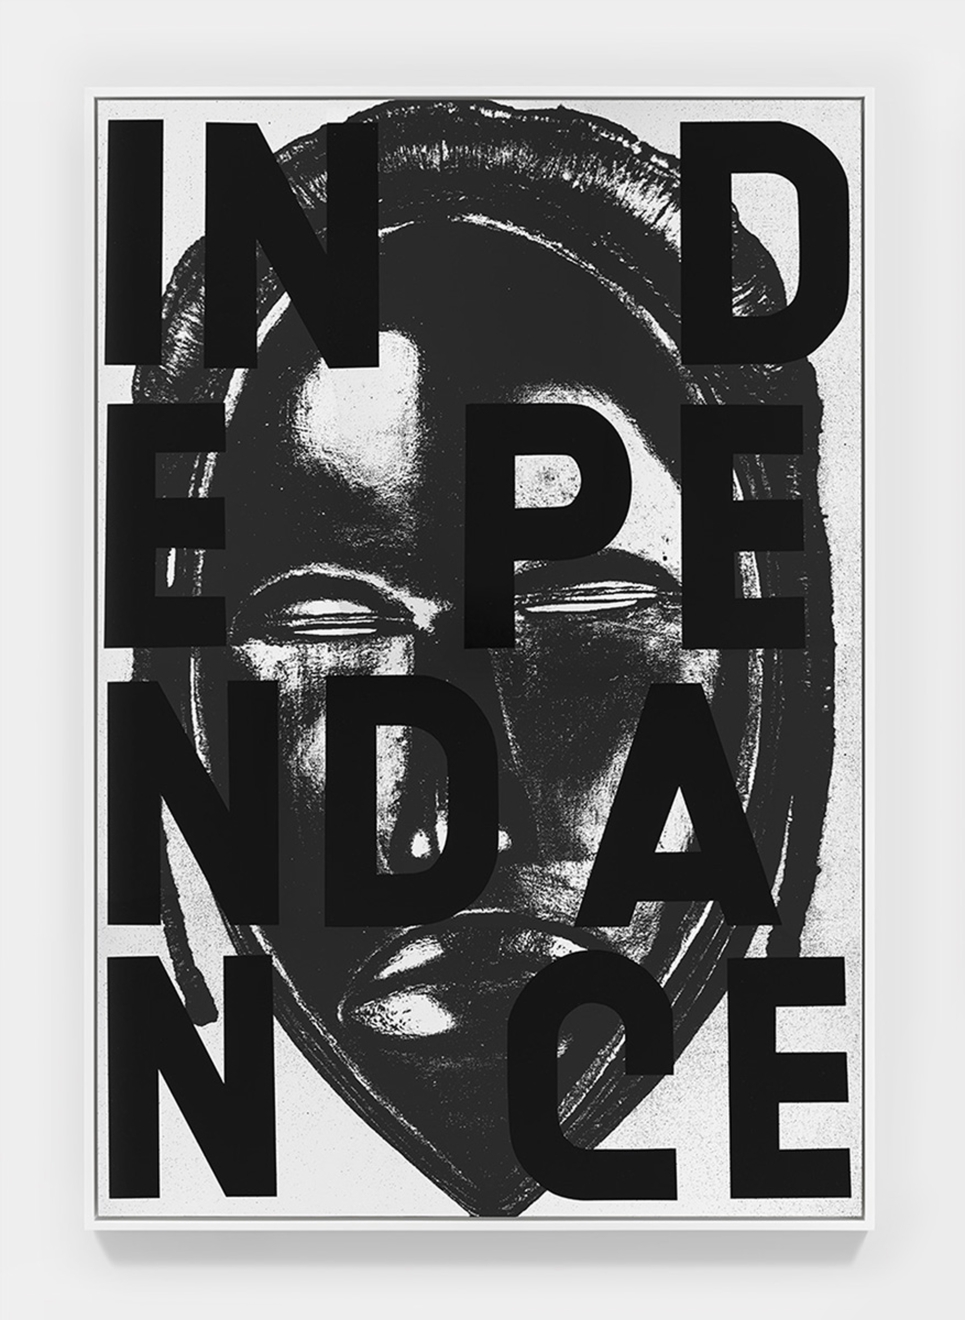 Adam Pendleton Independance (Mask, Ivory Coast), 2018